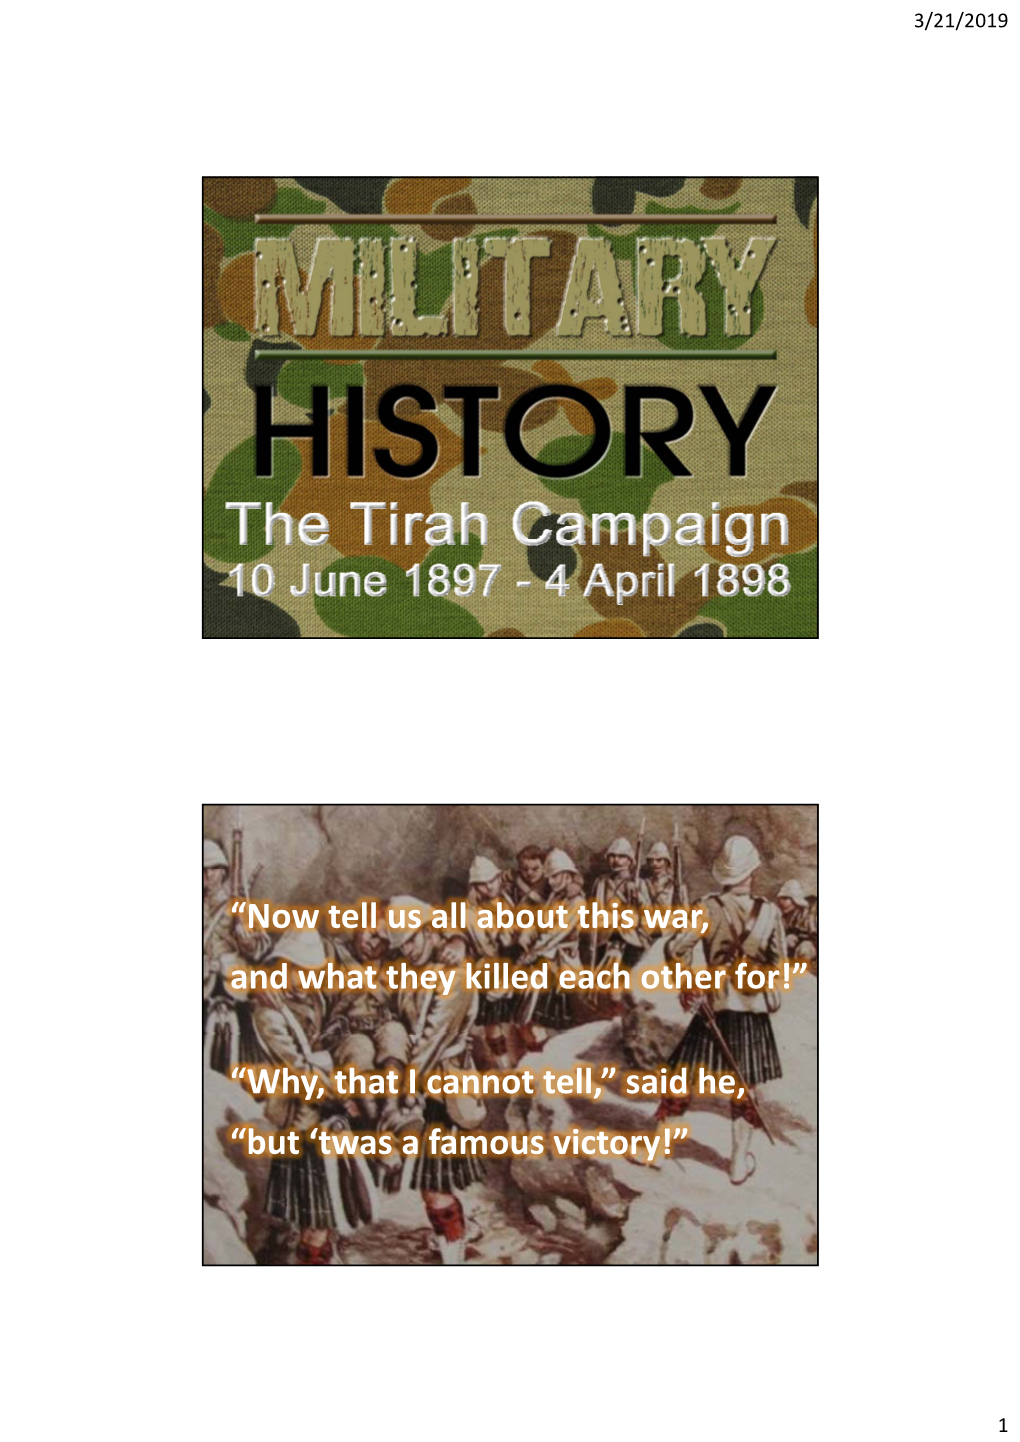 The 1897 Tirah Campaign